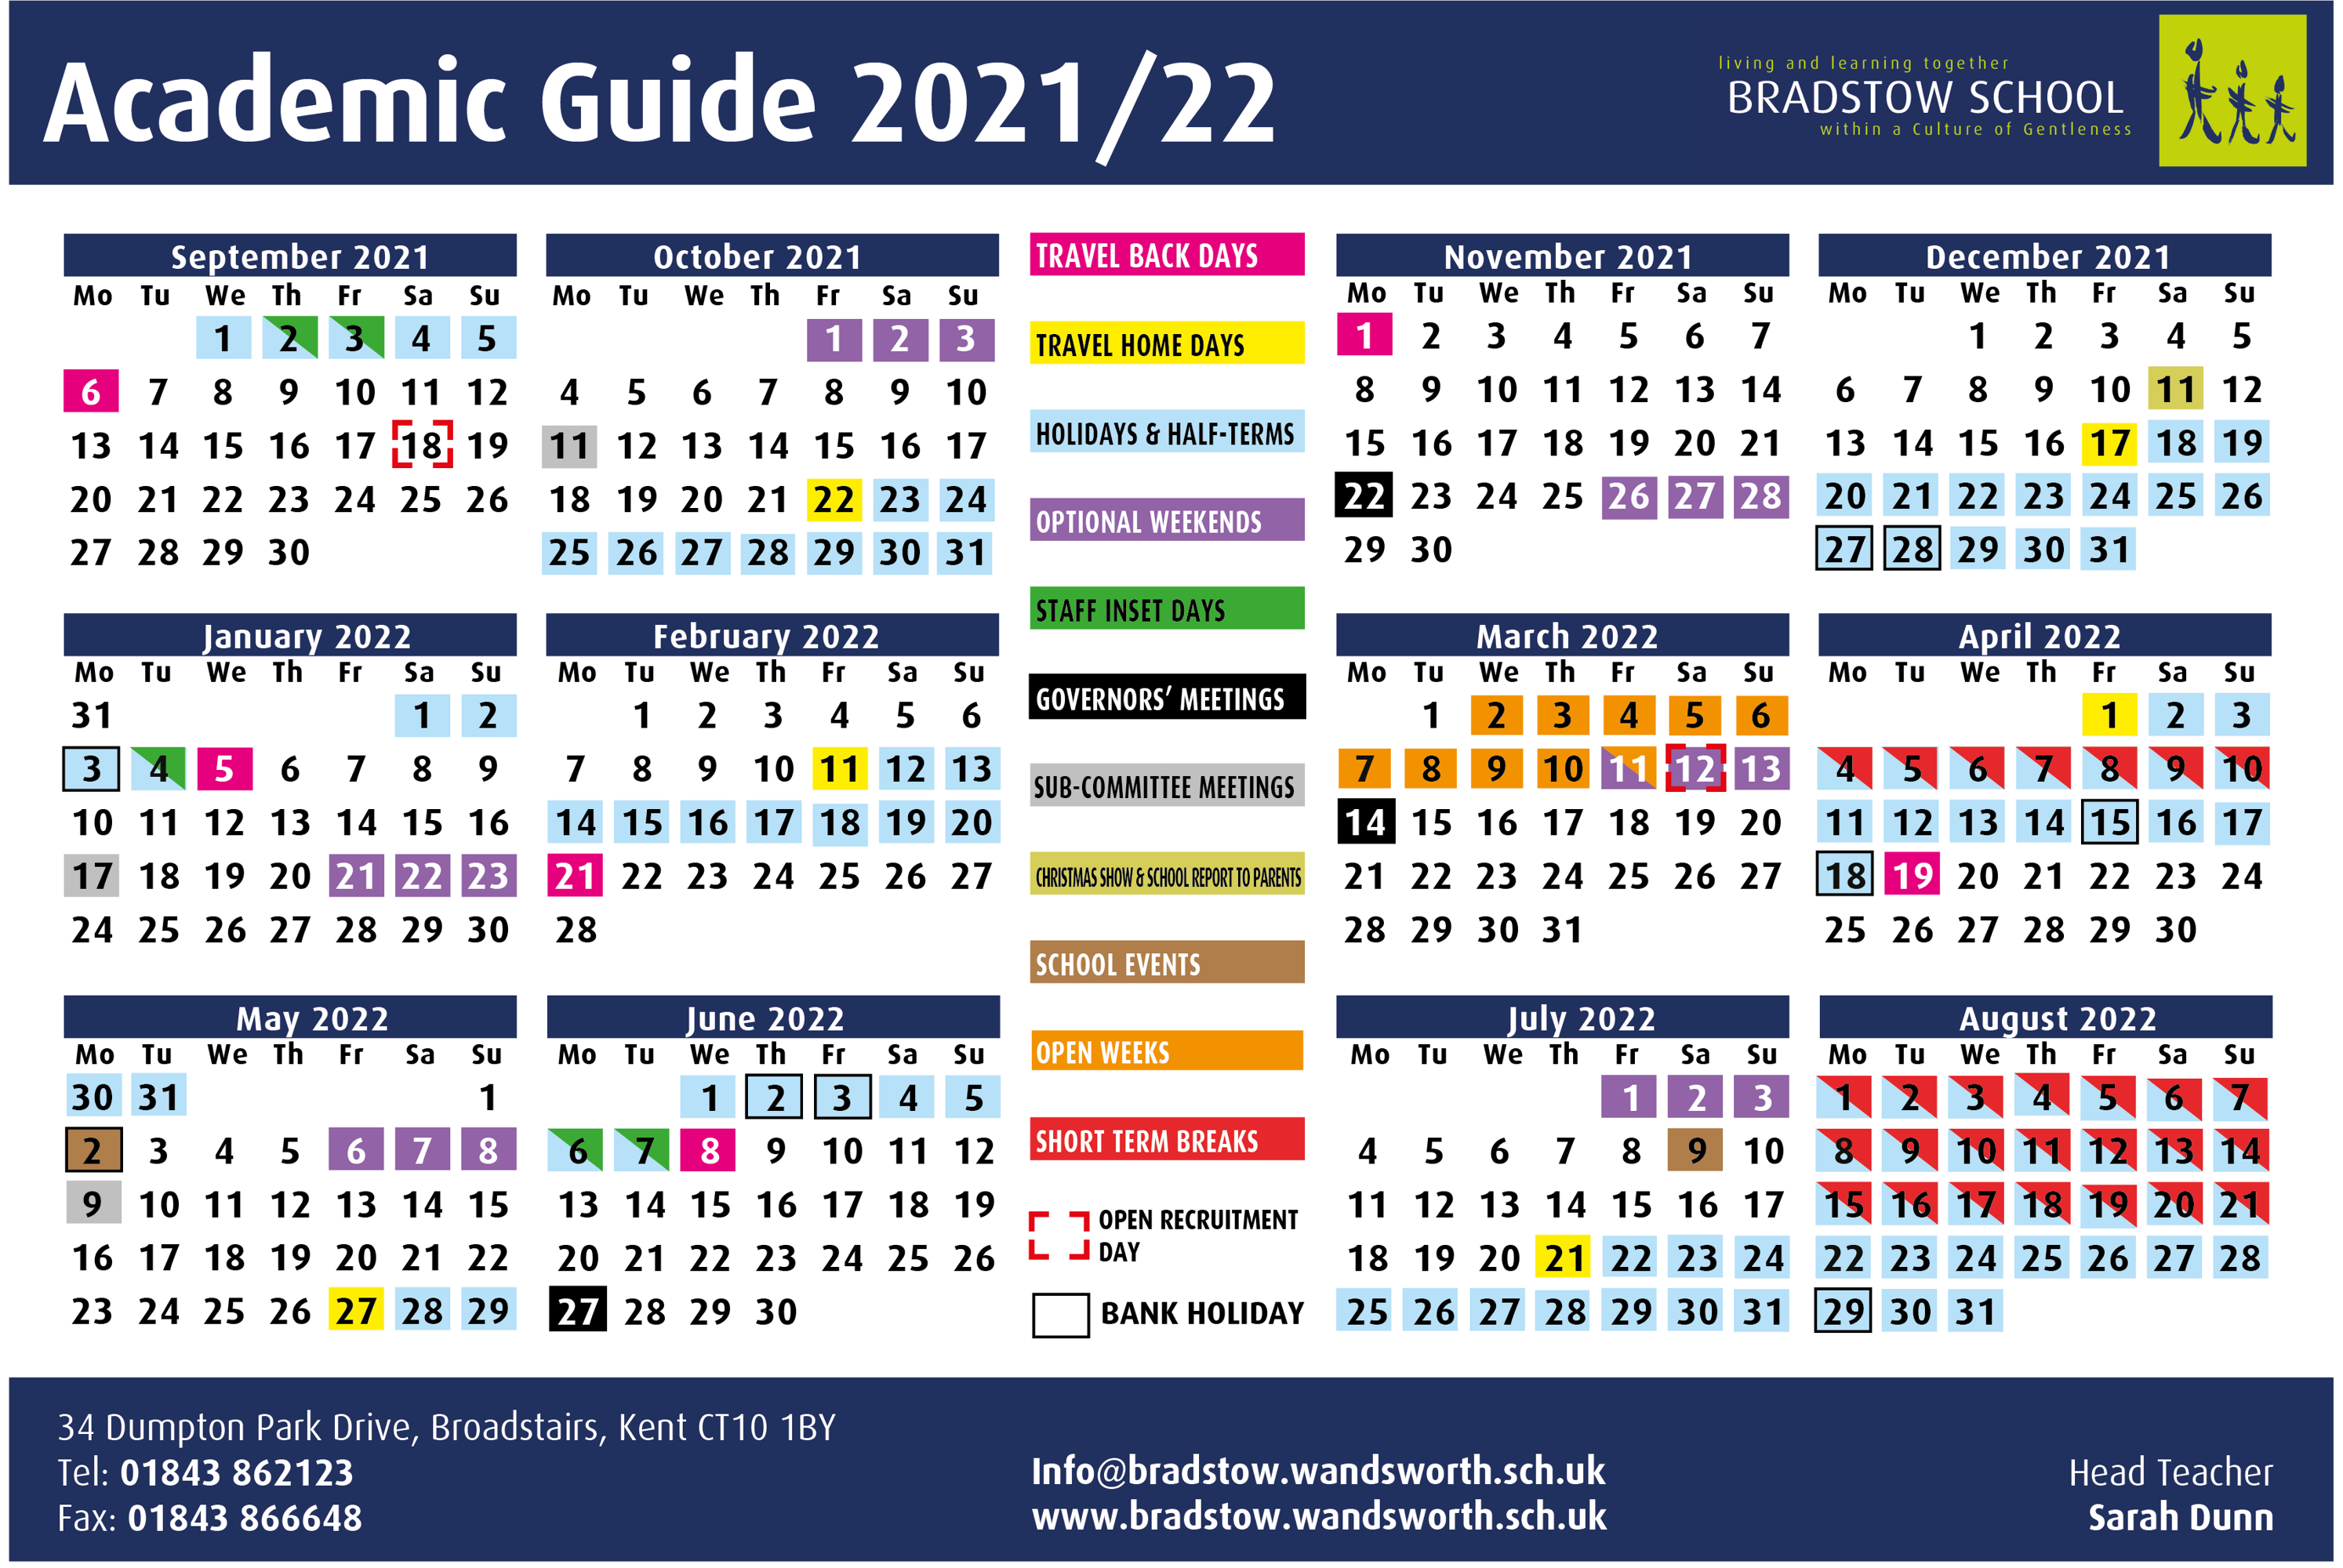 Calendar layout 2021 22 updated 2mar2022